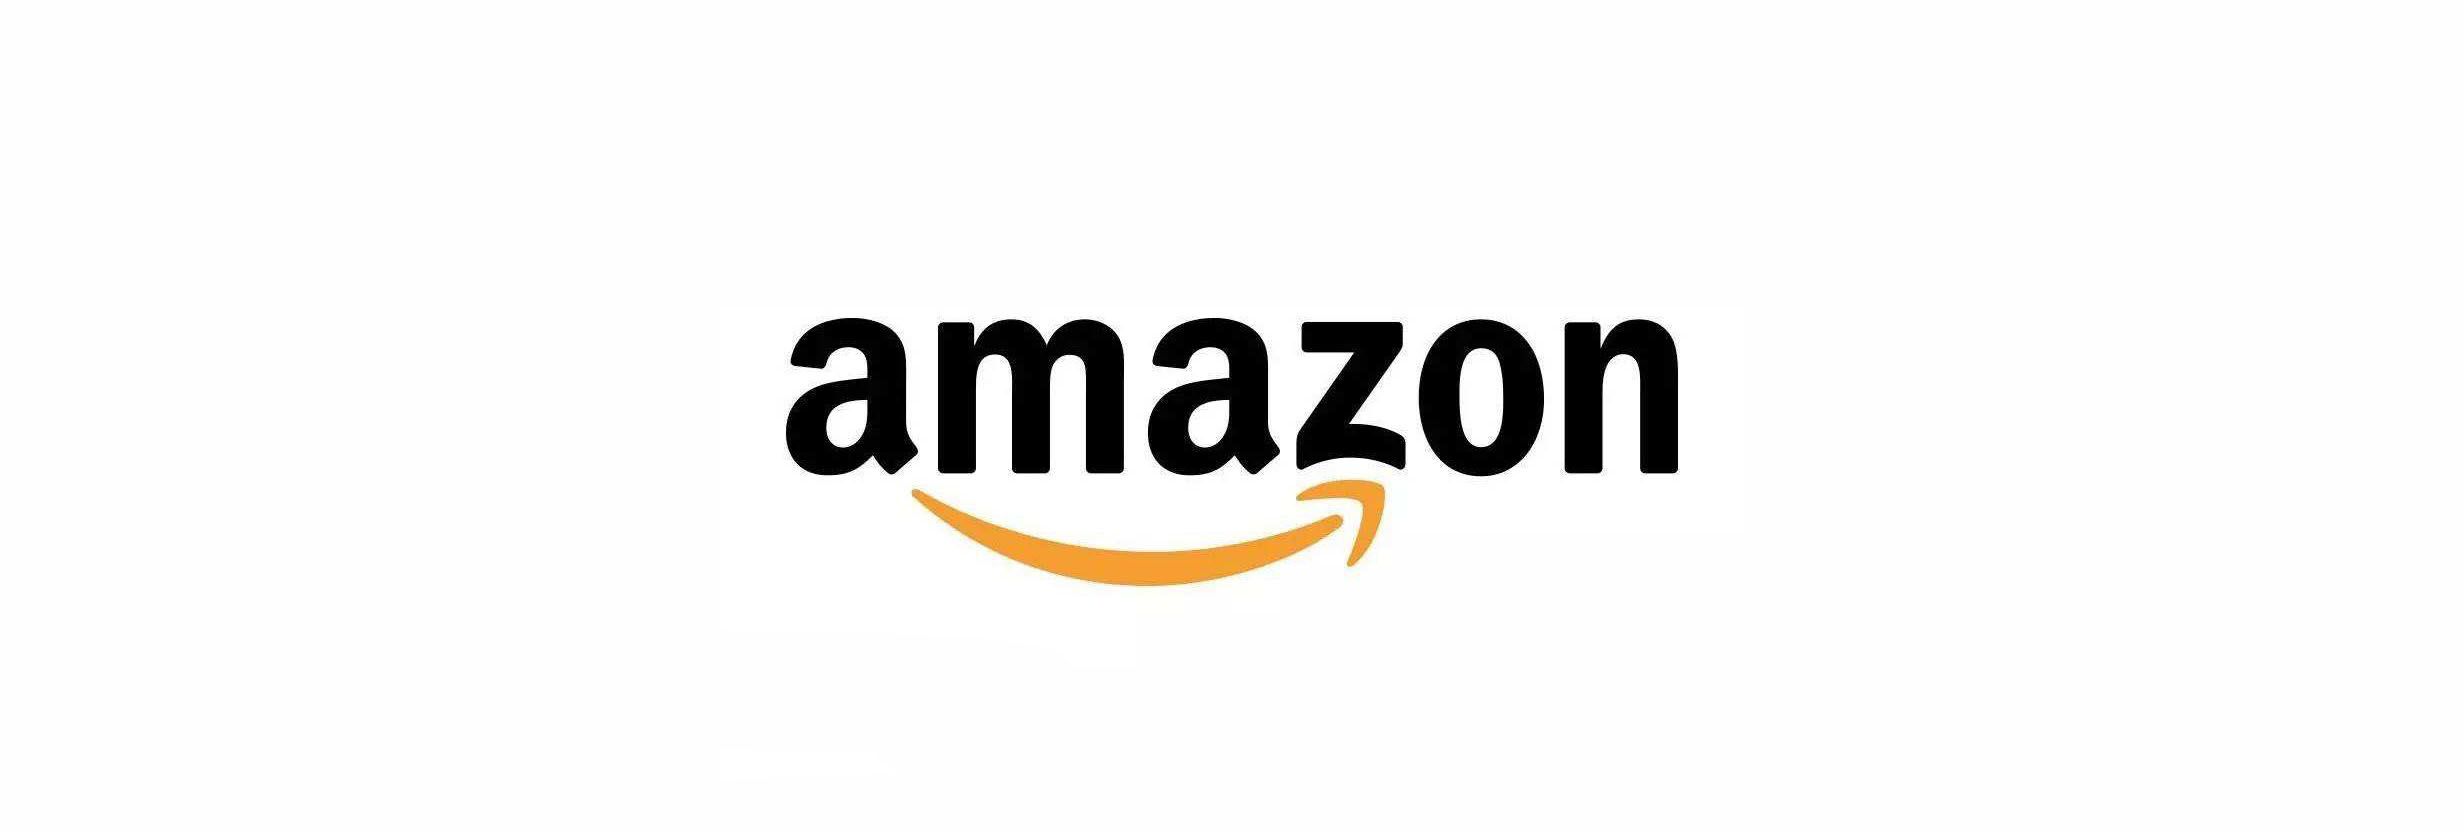 亚马逊(Amazon)品牌logo设计含义